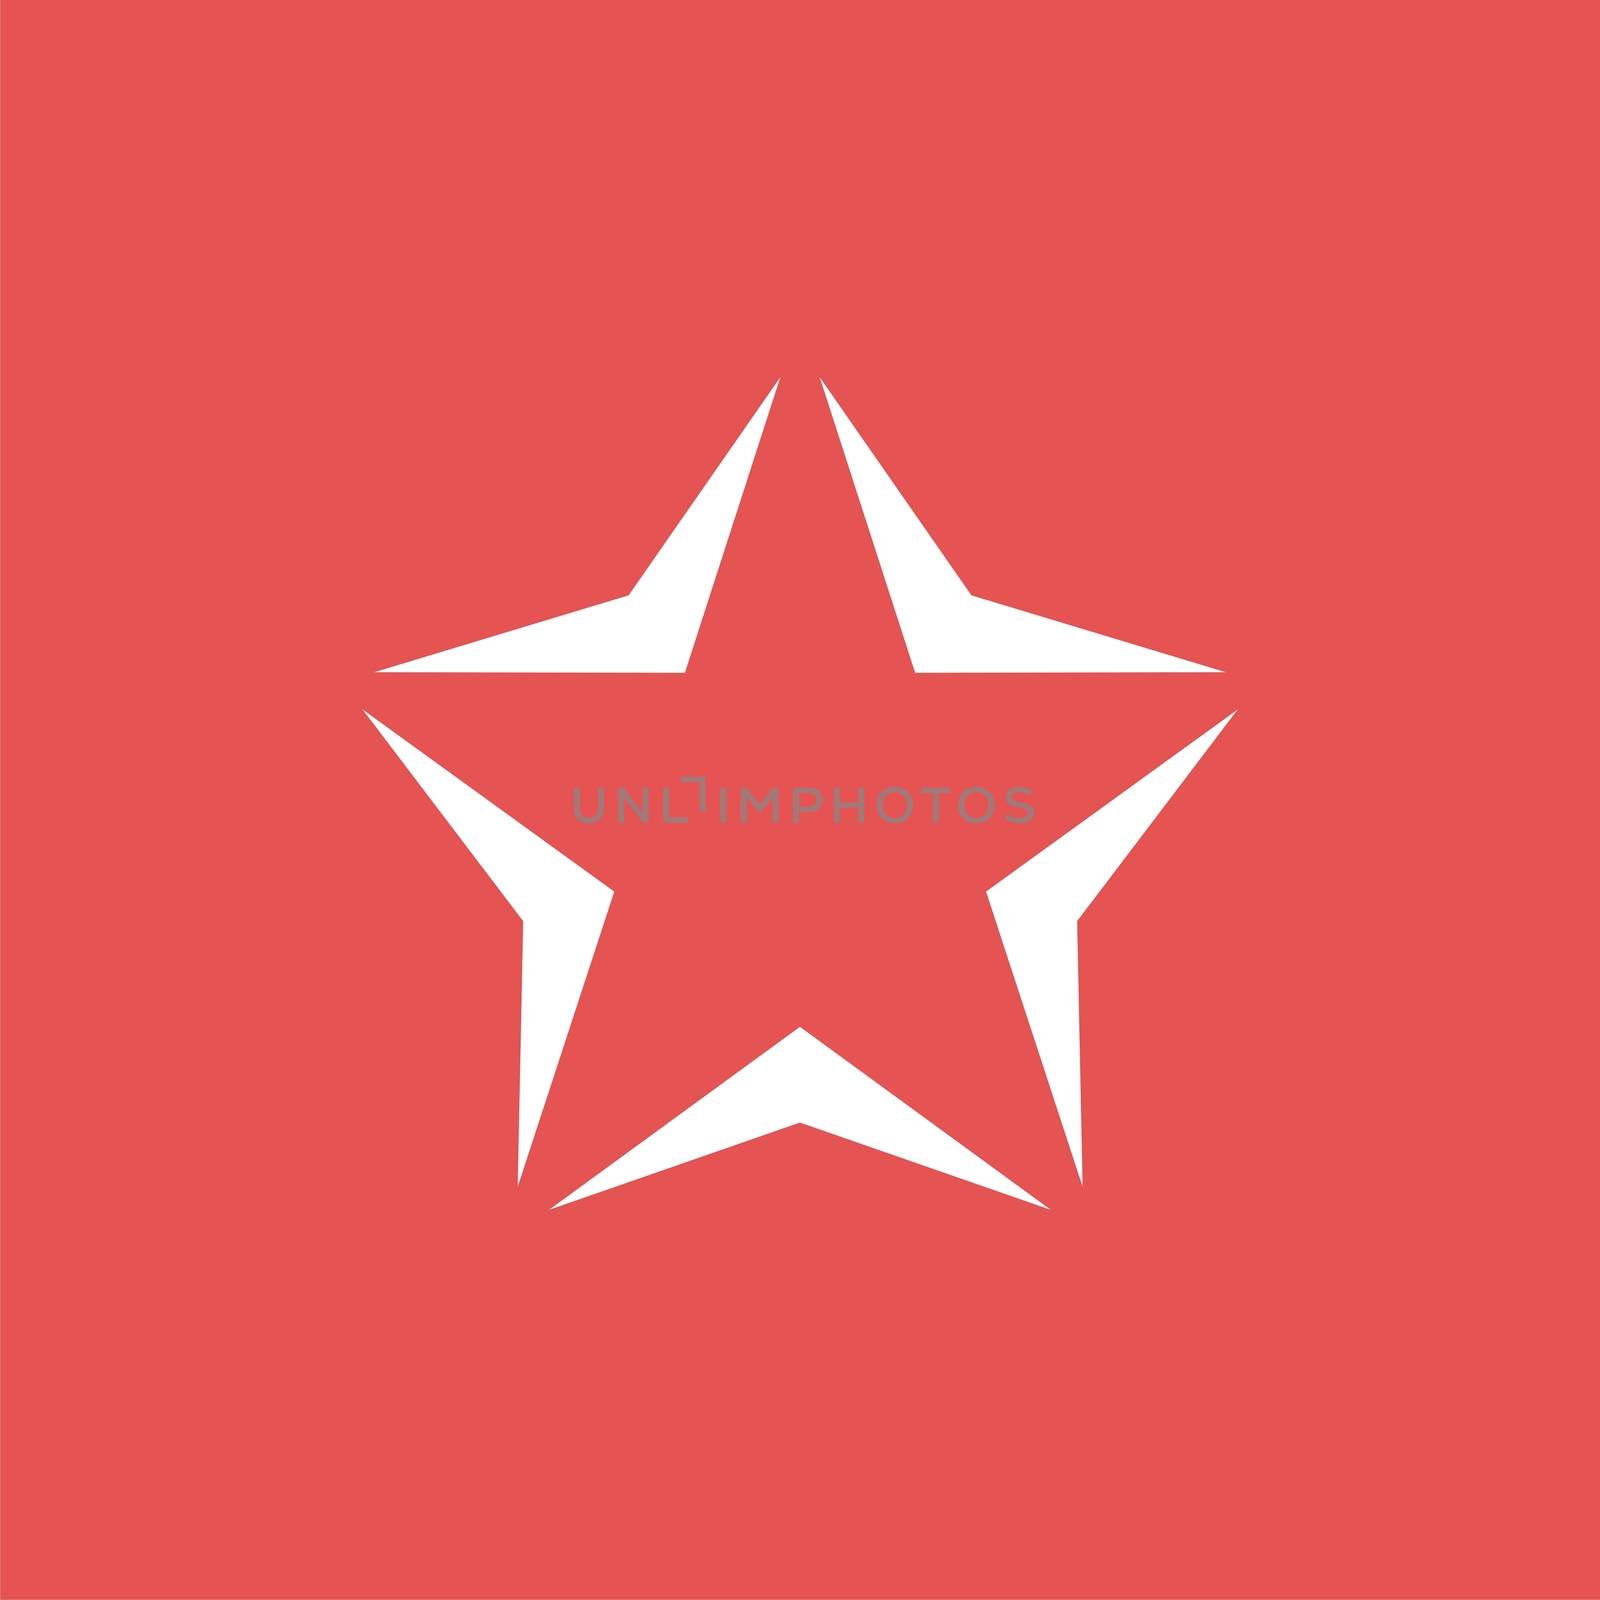 Monochrome Star vector Logo Template Illustration Design. Vector EPS 10.